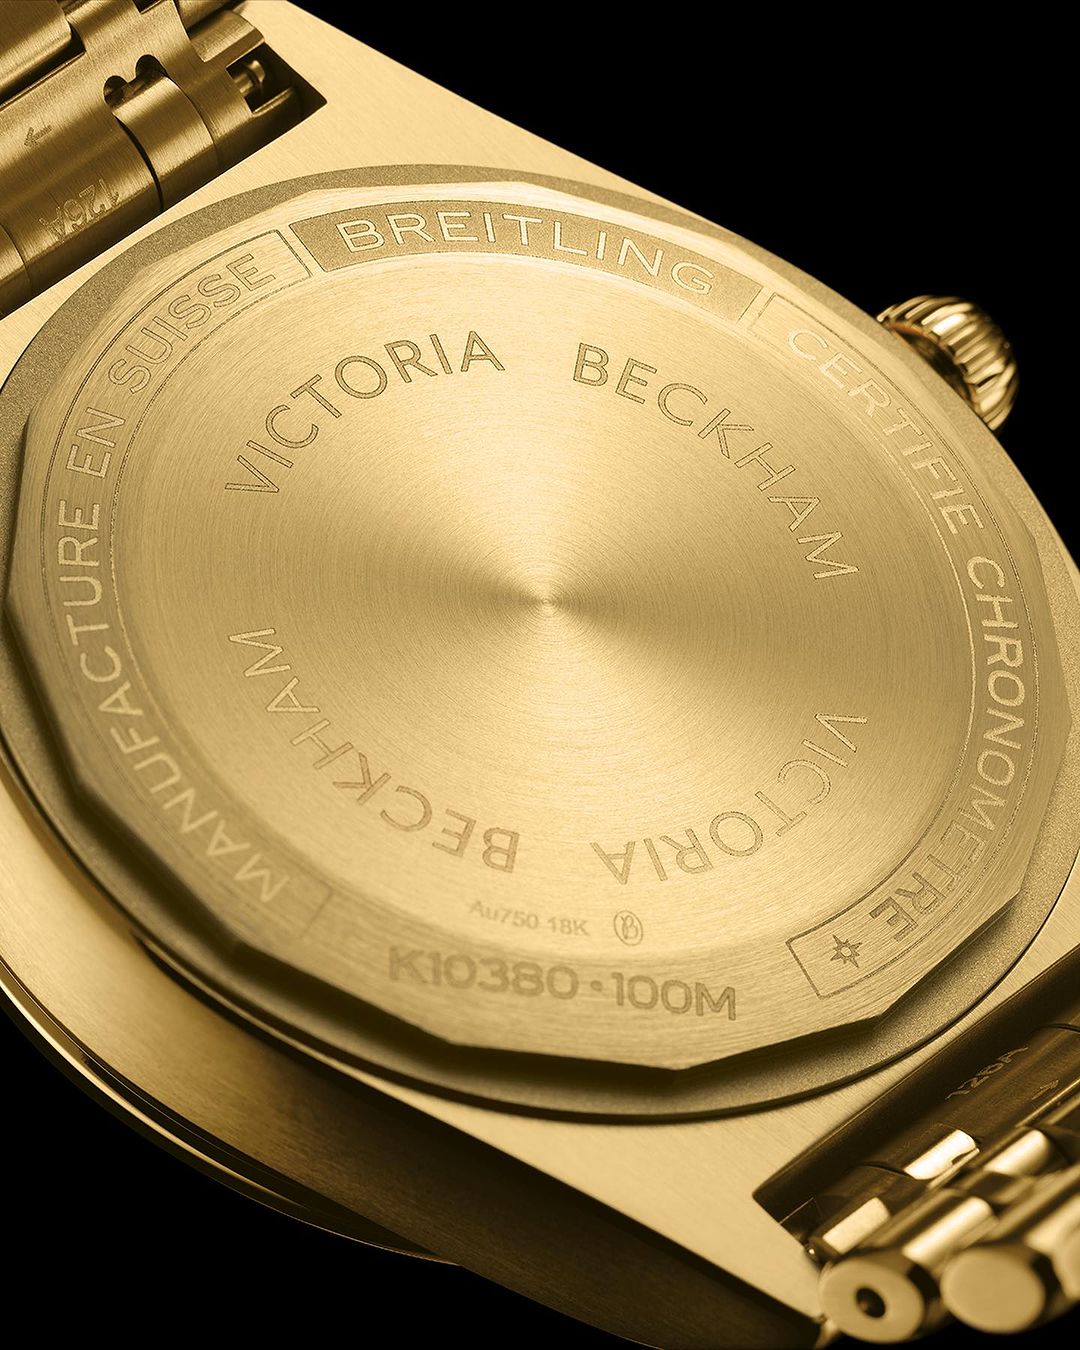 Η Victoria Beckham συνεργάζεται με την Breitling δημιουργώντας τη Limited Edition Chronomat 36